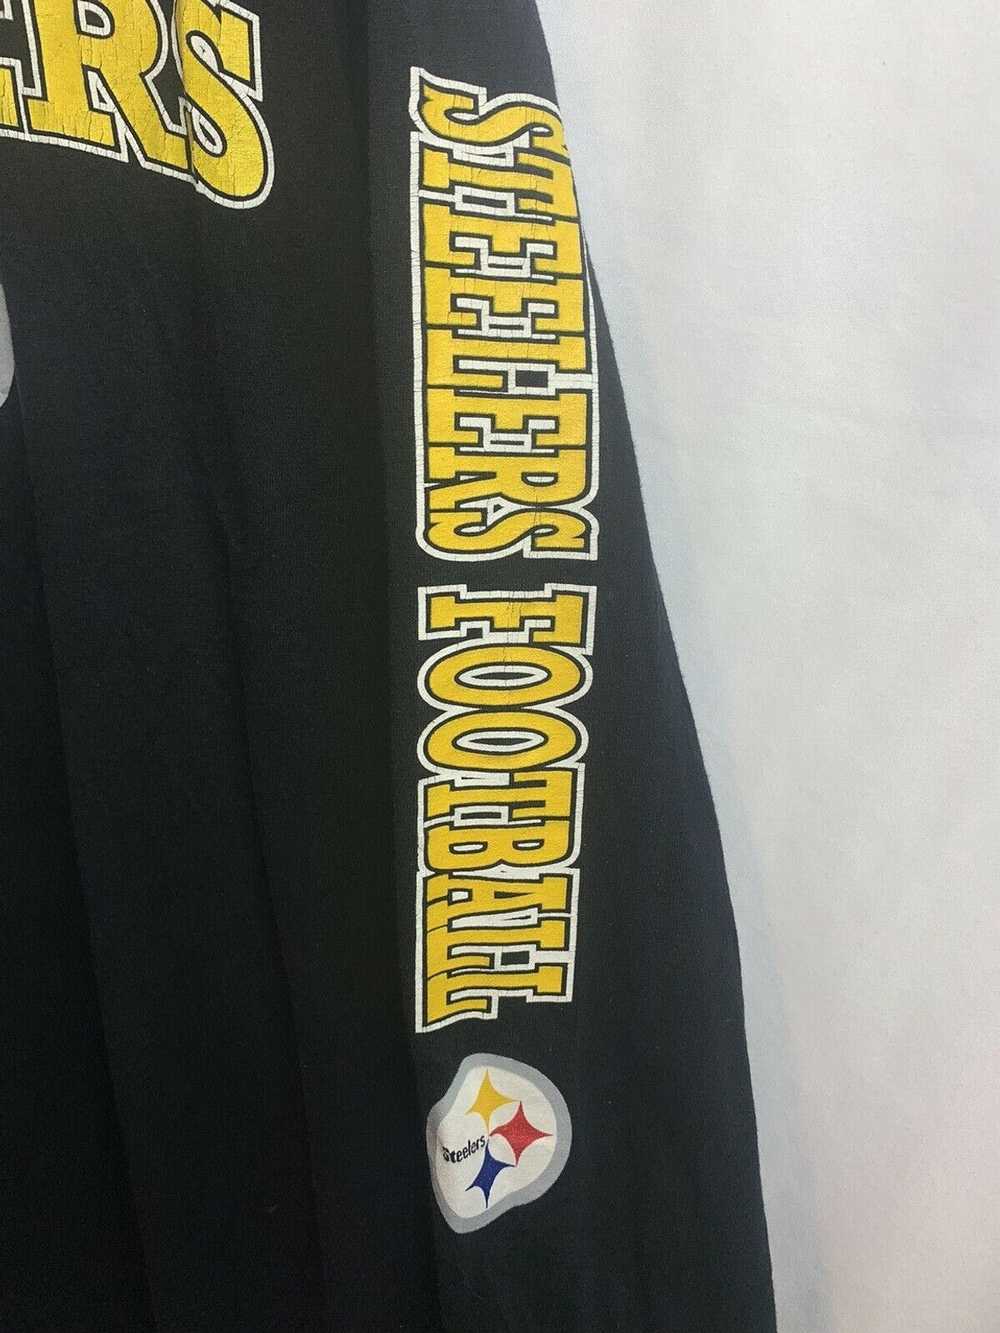 NFL Pittsburg NFL Team Apparel Men’s Black T-Shir… - image 3